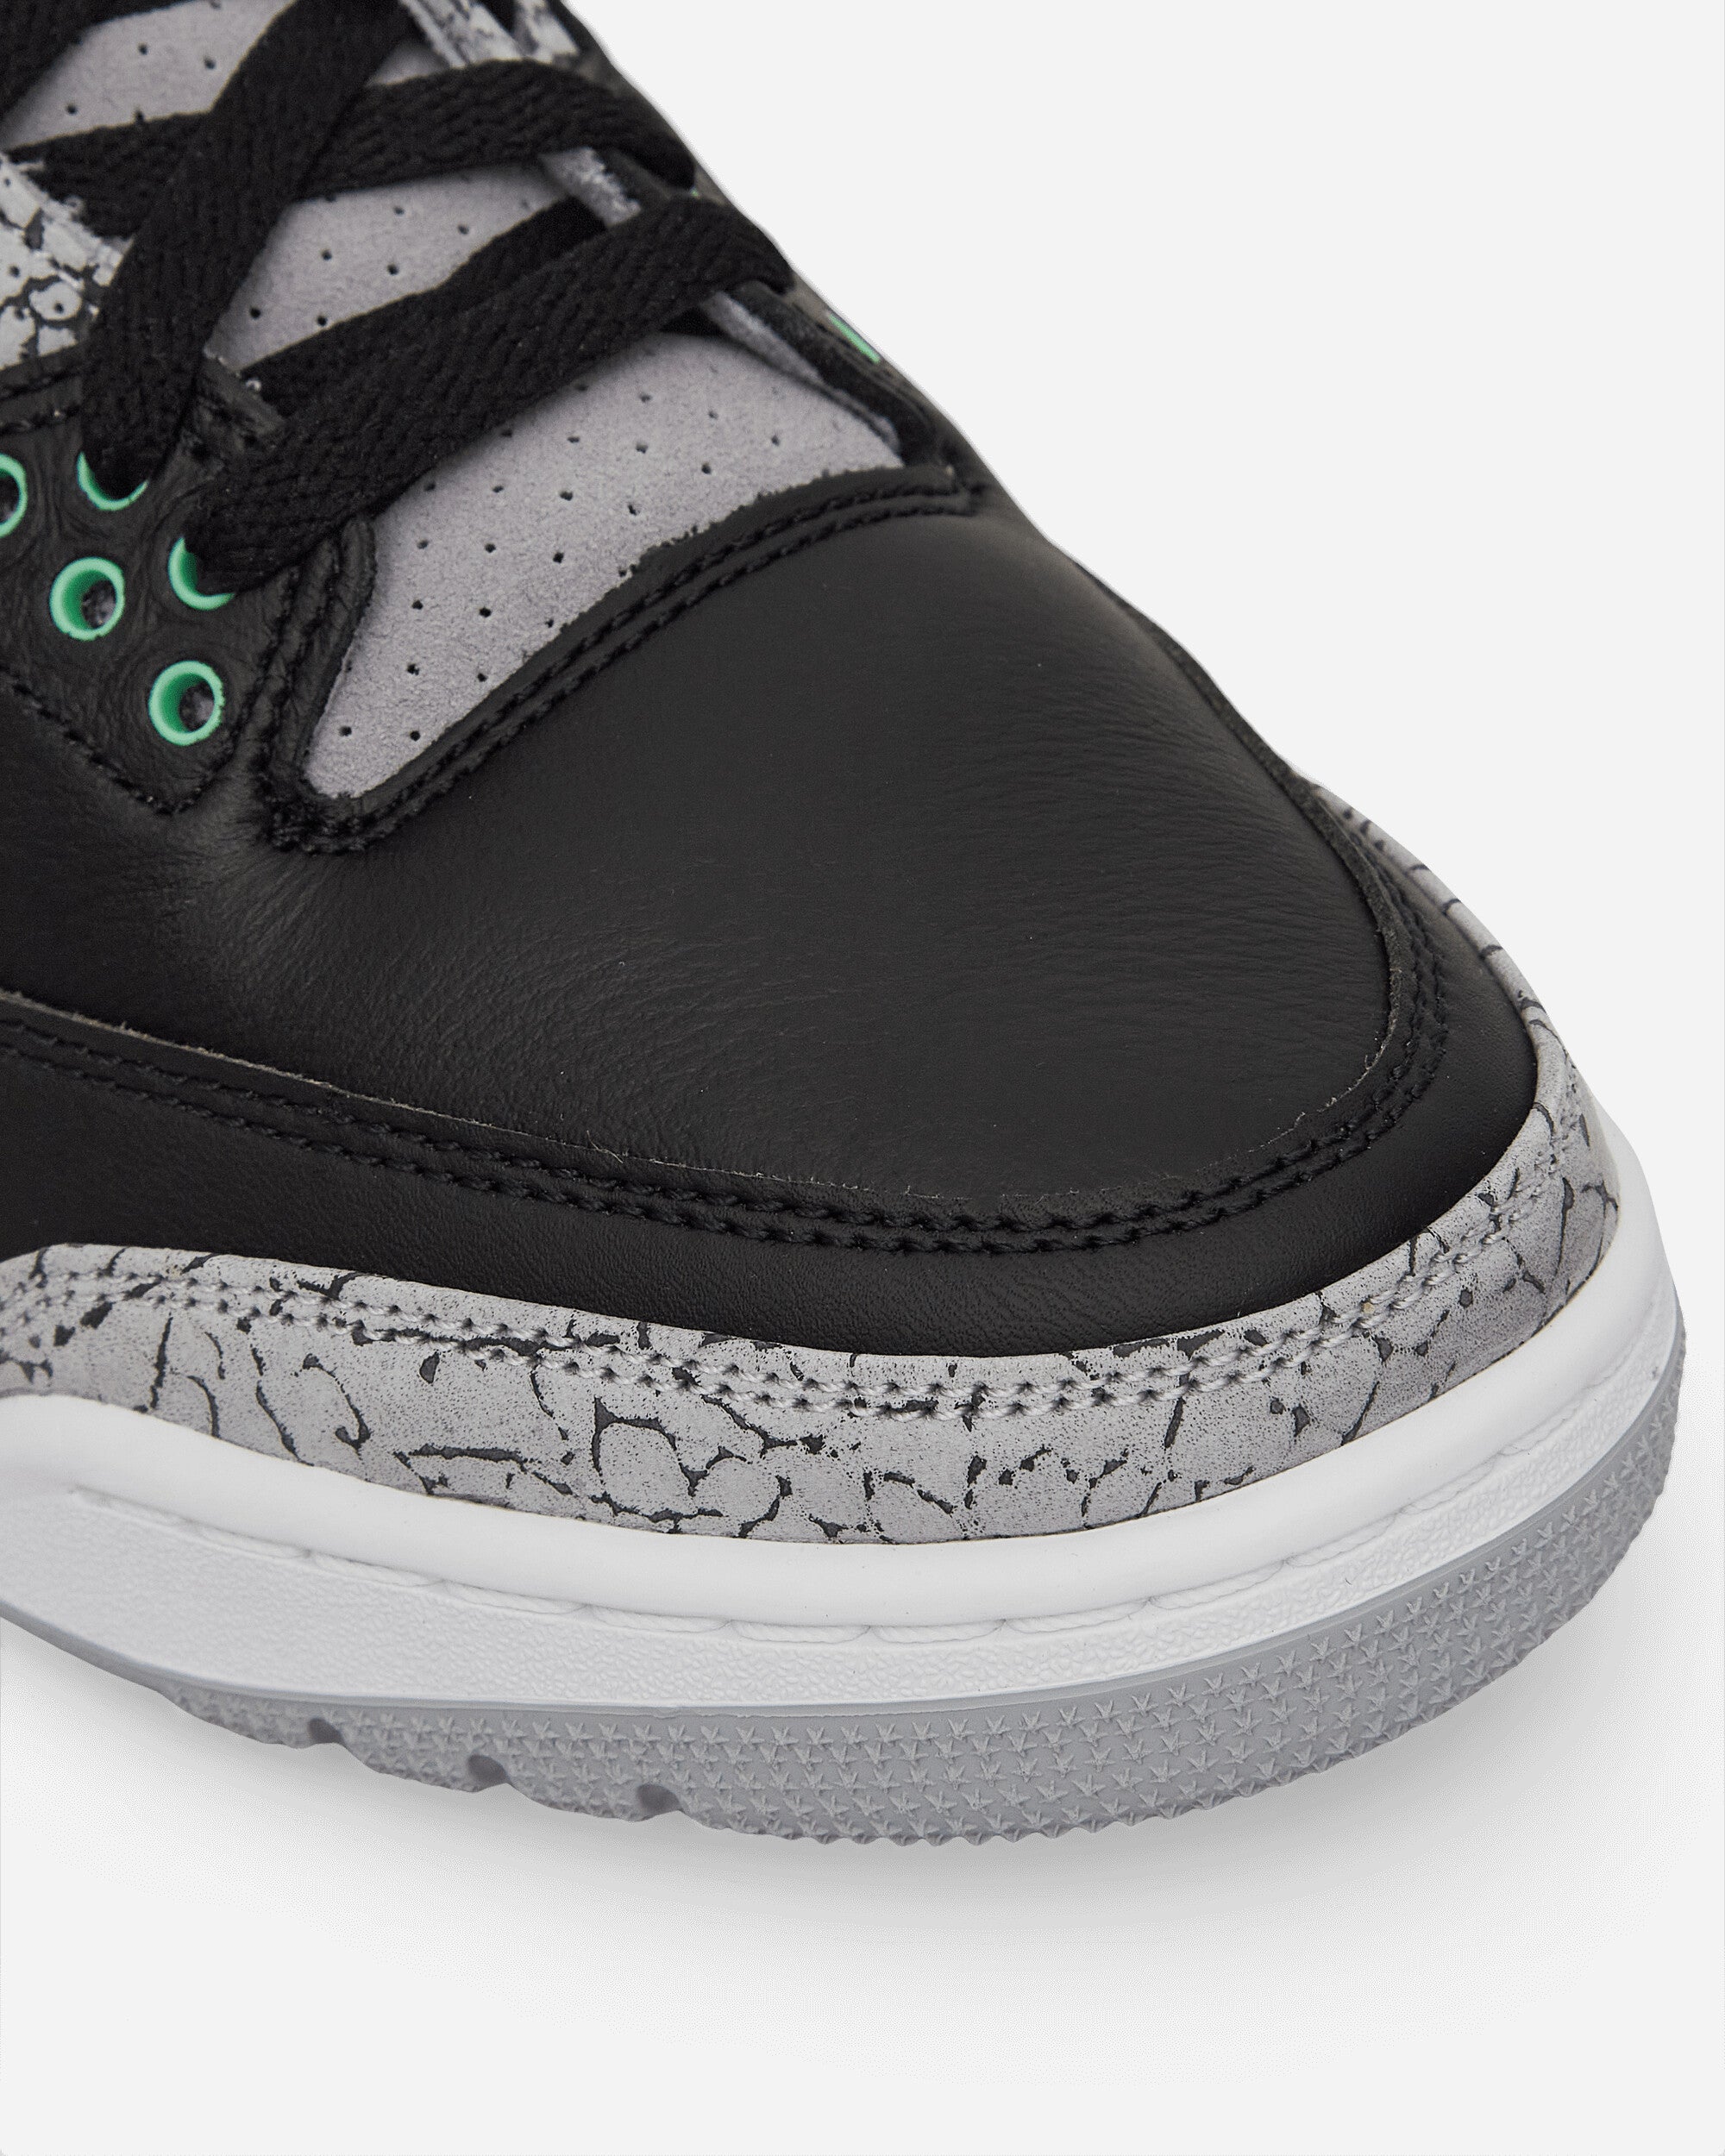 Nike Jordan Air Hordan 3 Retro (Gs) Black/Green Glow/Wolf Grey Sneakers Low DM0967-031